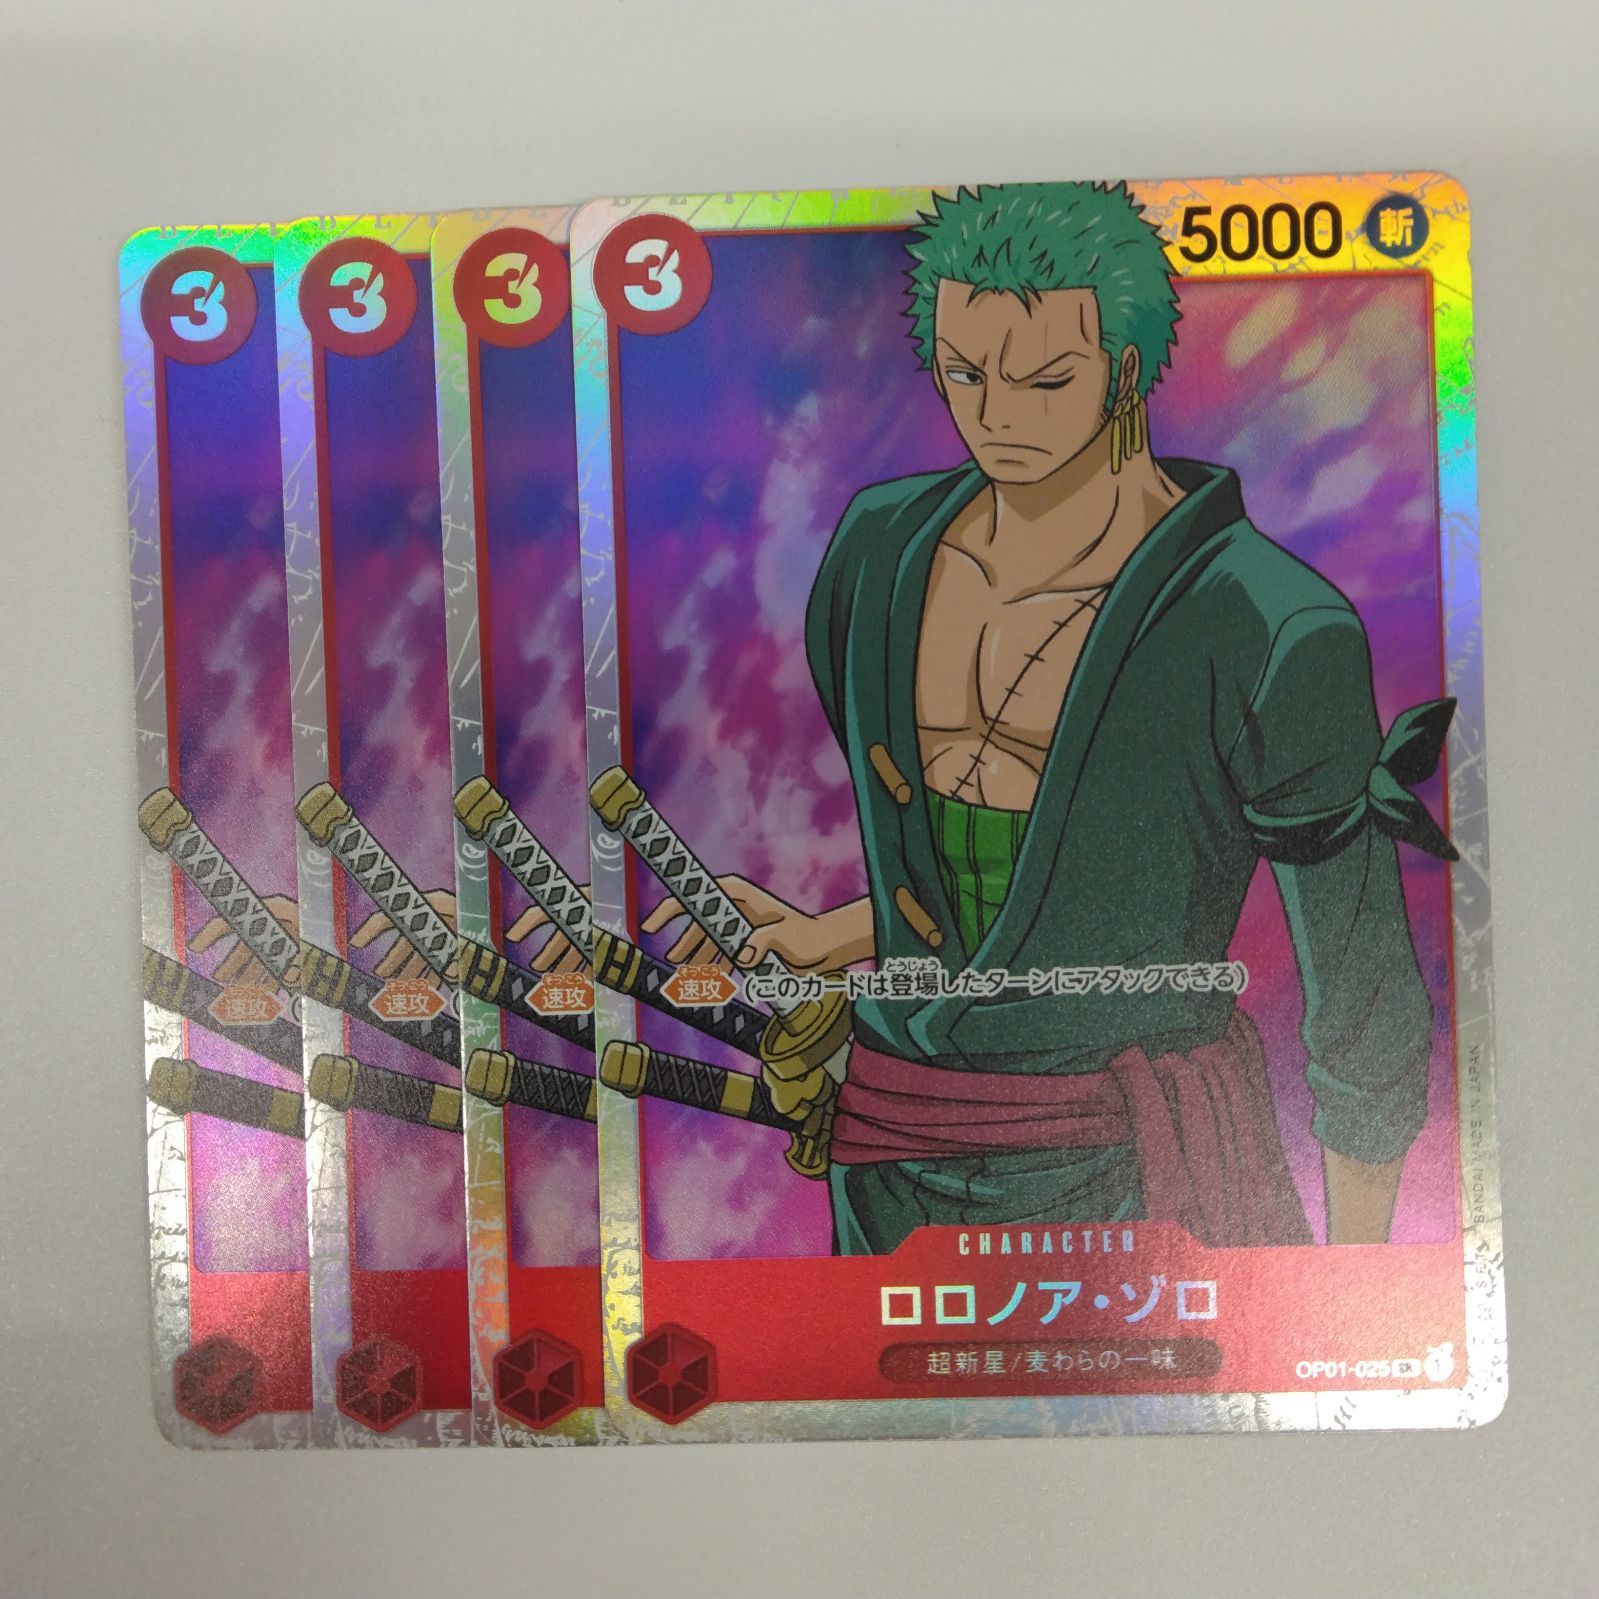 ワンピースカードゲーム OP01-025 ロロノア・ゾロ (SR スーパーレア)4